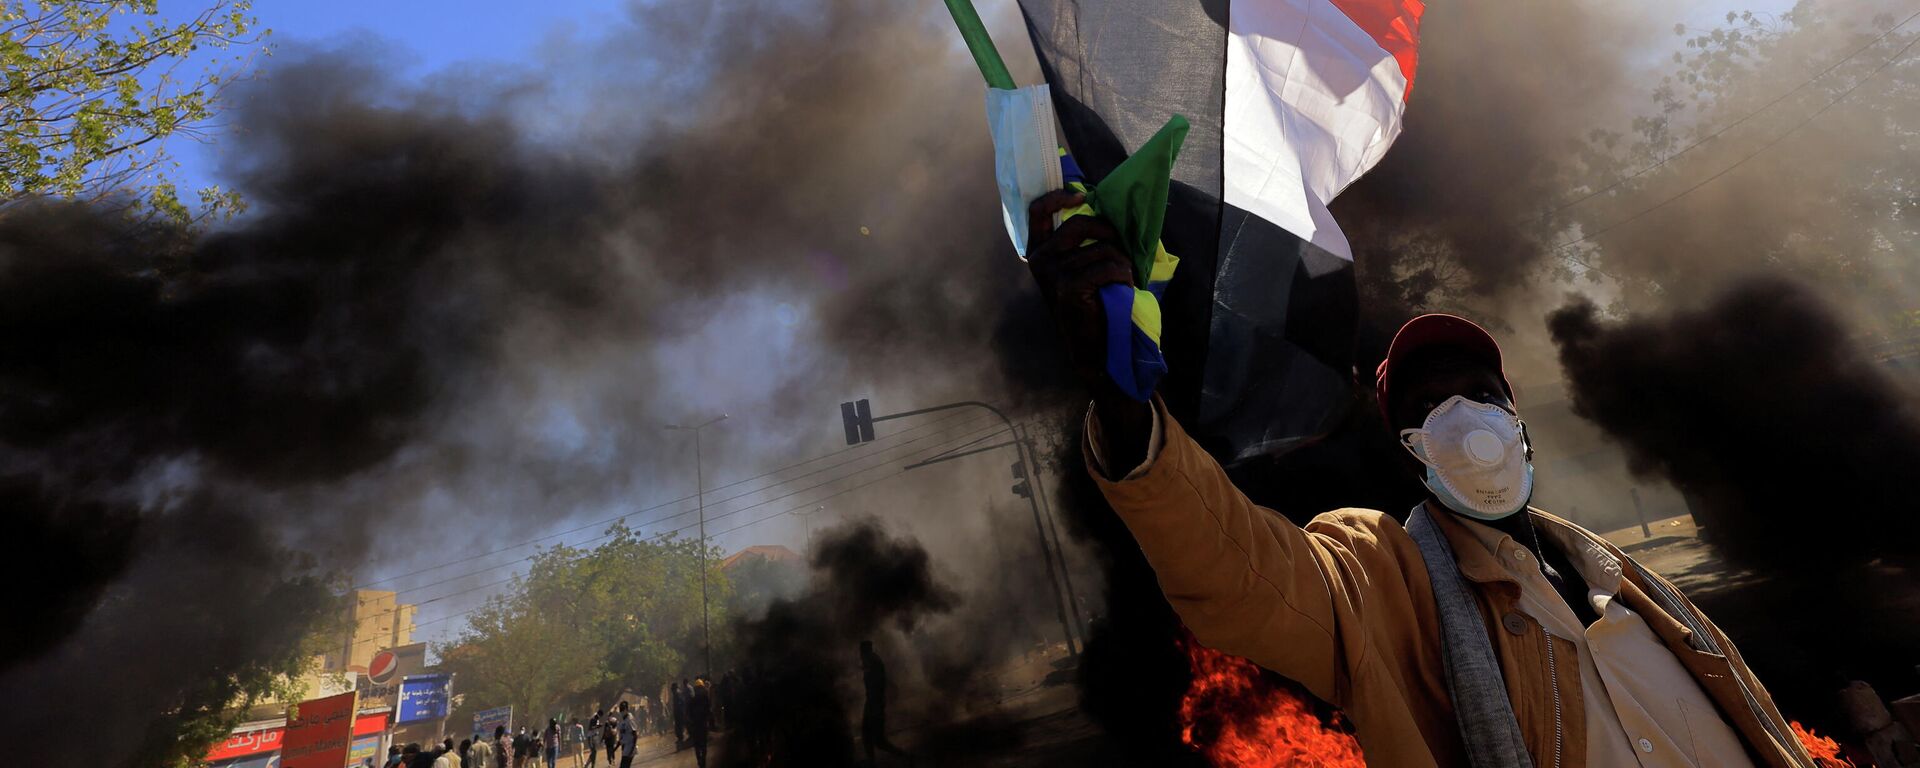 متظاهر في السودان يرفع علم بلاده أثناء احتجاجات الجمعة 31 ديسمبر  - سبوتنيك عربي, 1920, 14.04.2022